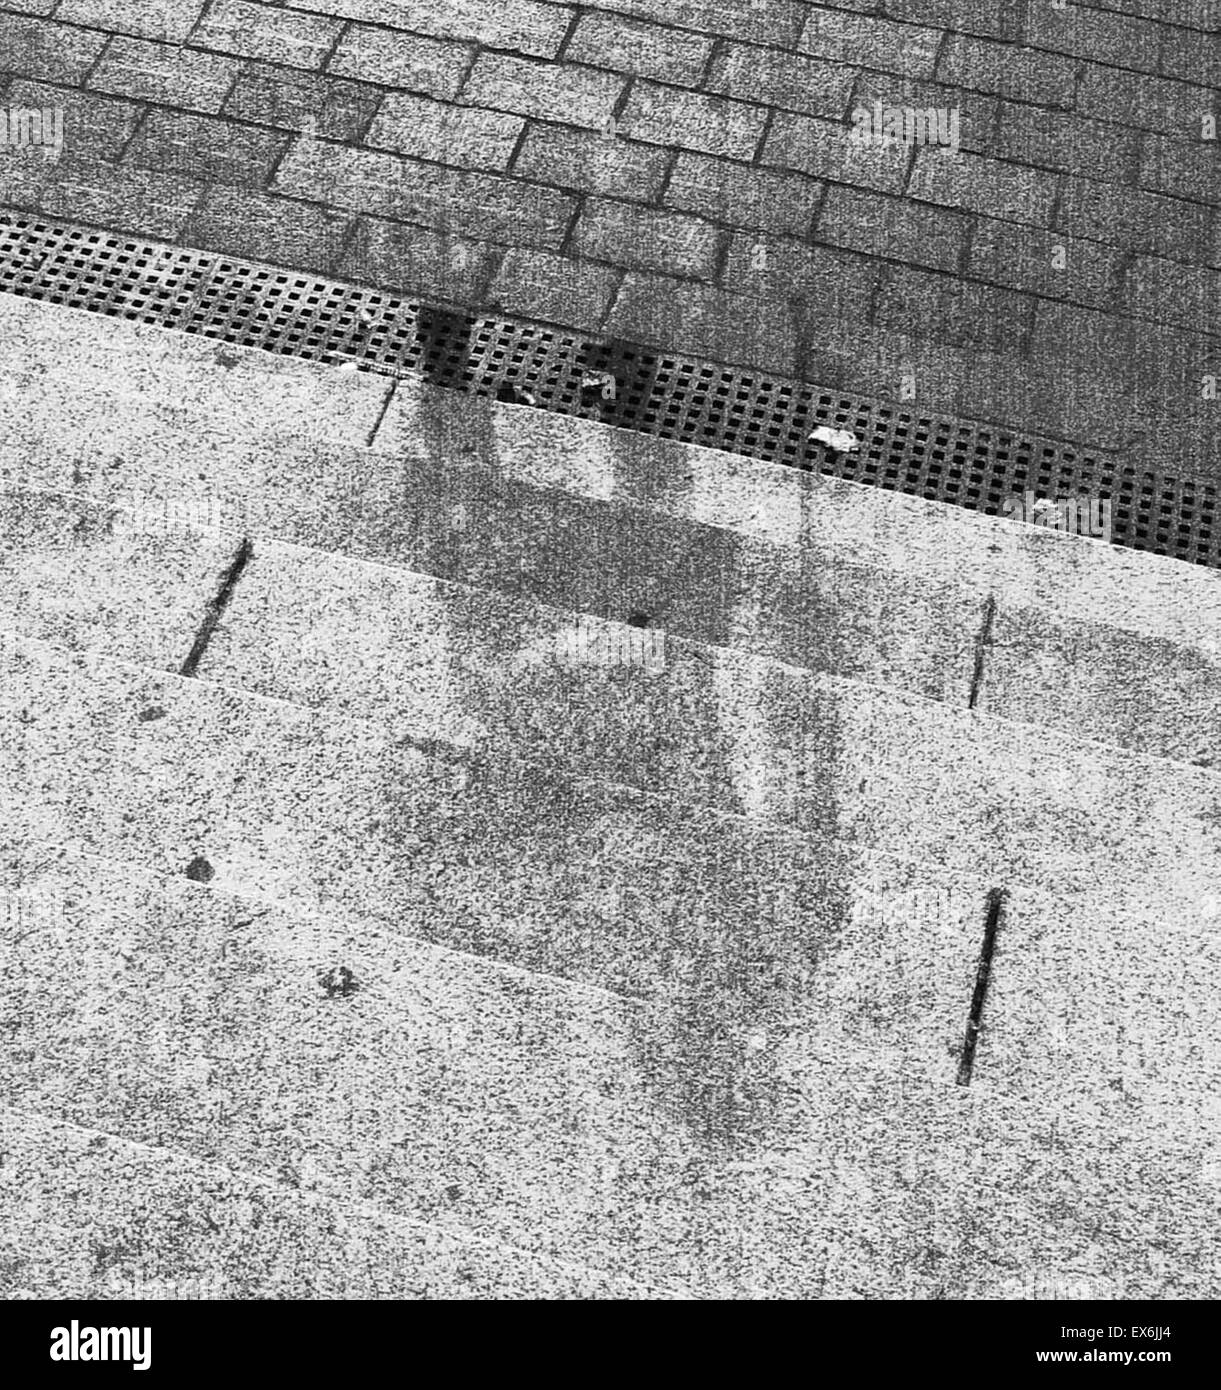 Zweiter Weltkrieg, menschliche Schatten auf Bank Schritte in Hiroshima nach der Explosion der Atombombe im August 1945 Hiroshima, Japan Stockfoto